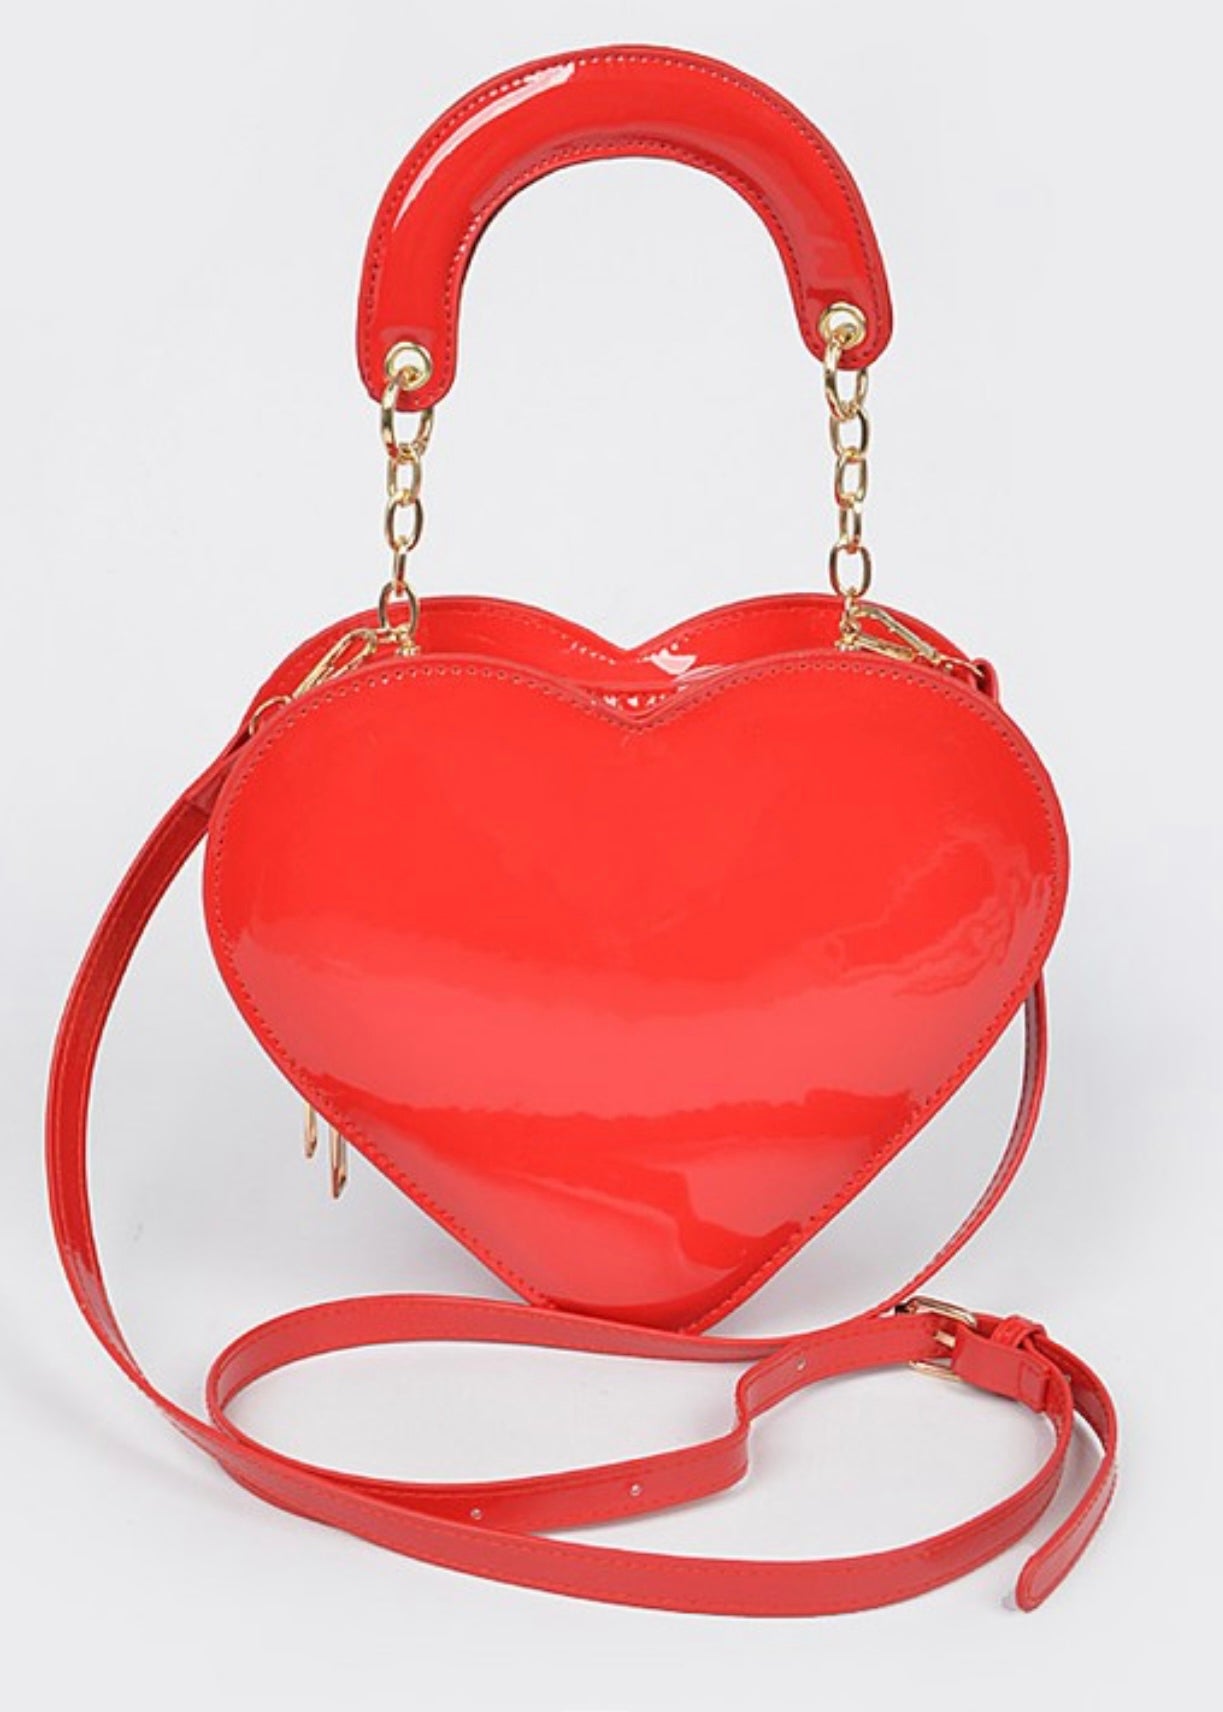 All My Heart : Handbag